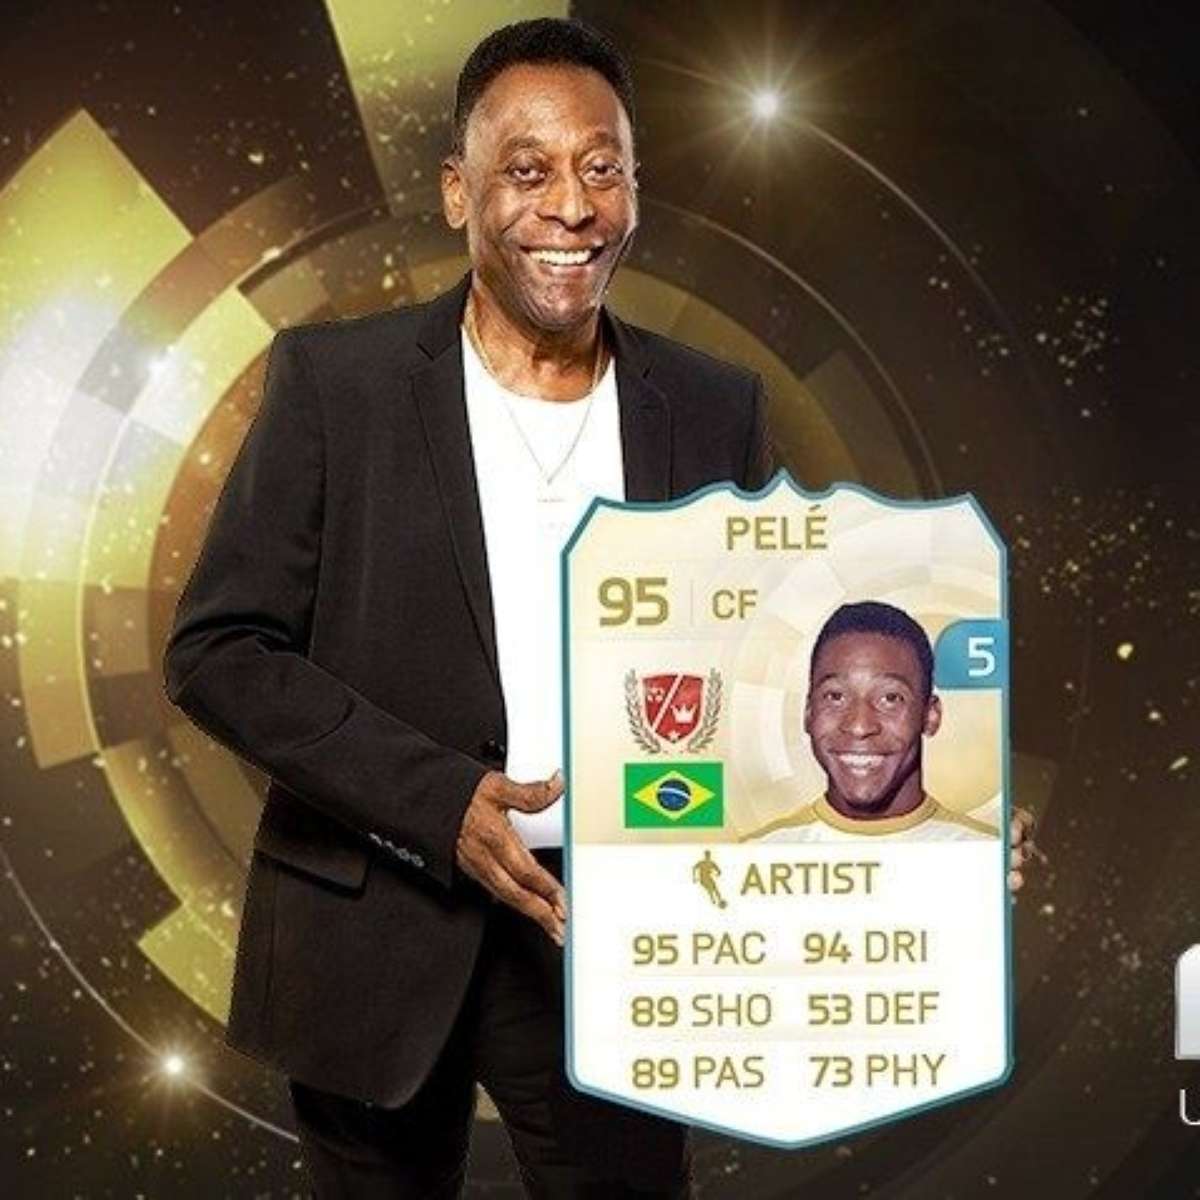 A FIFA vai manter os pés do Pelé em exposição no museu?